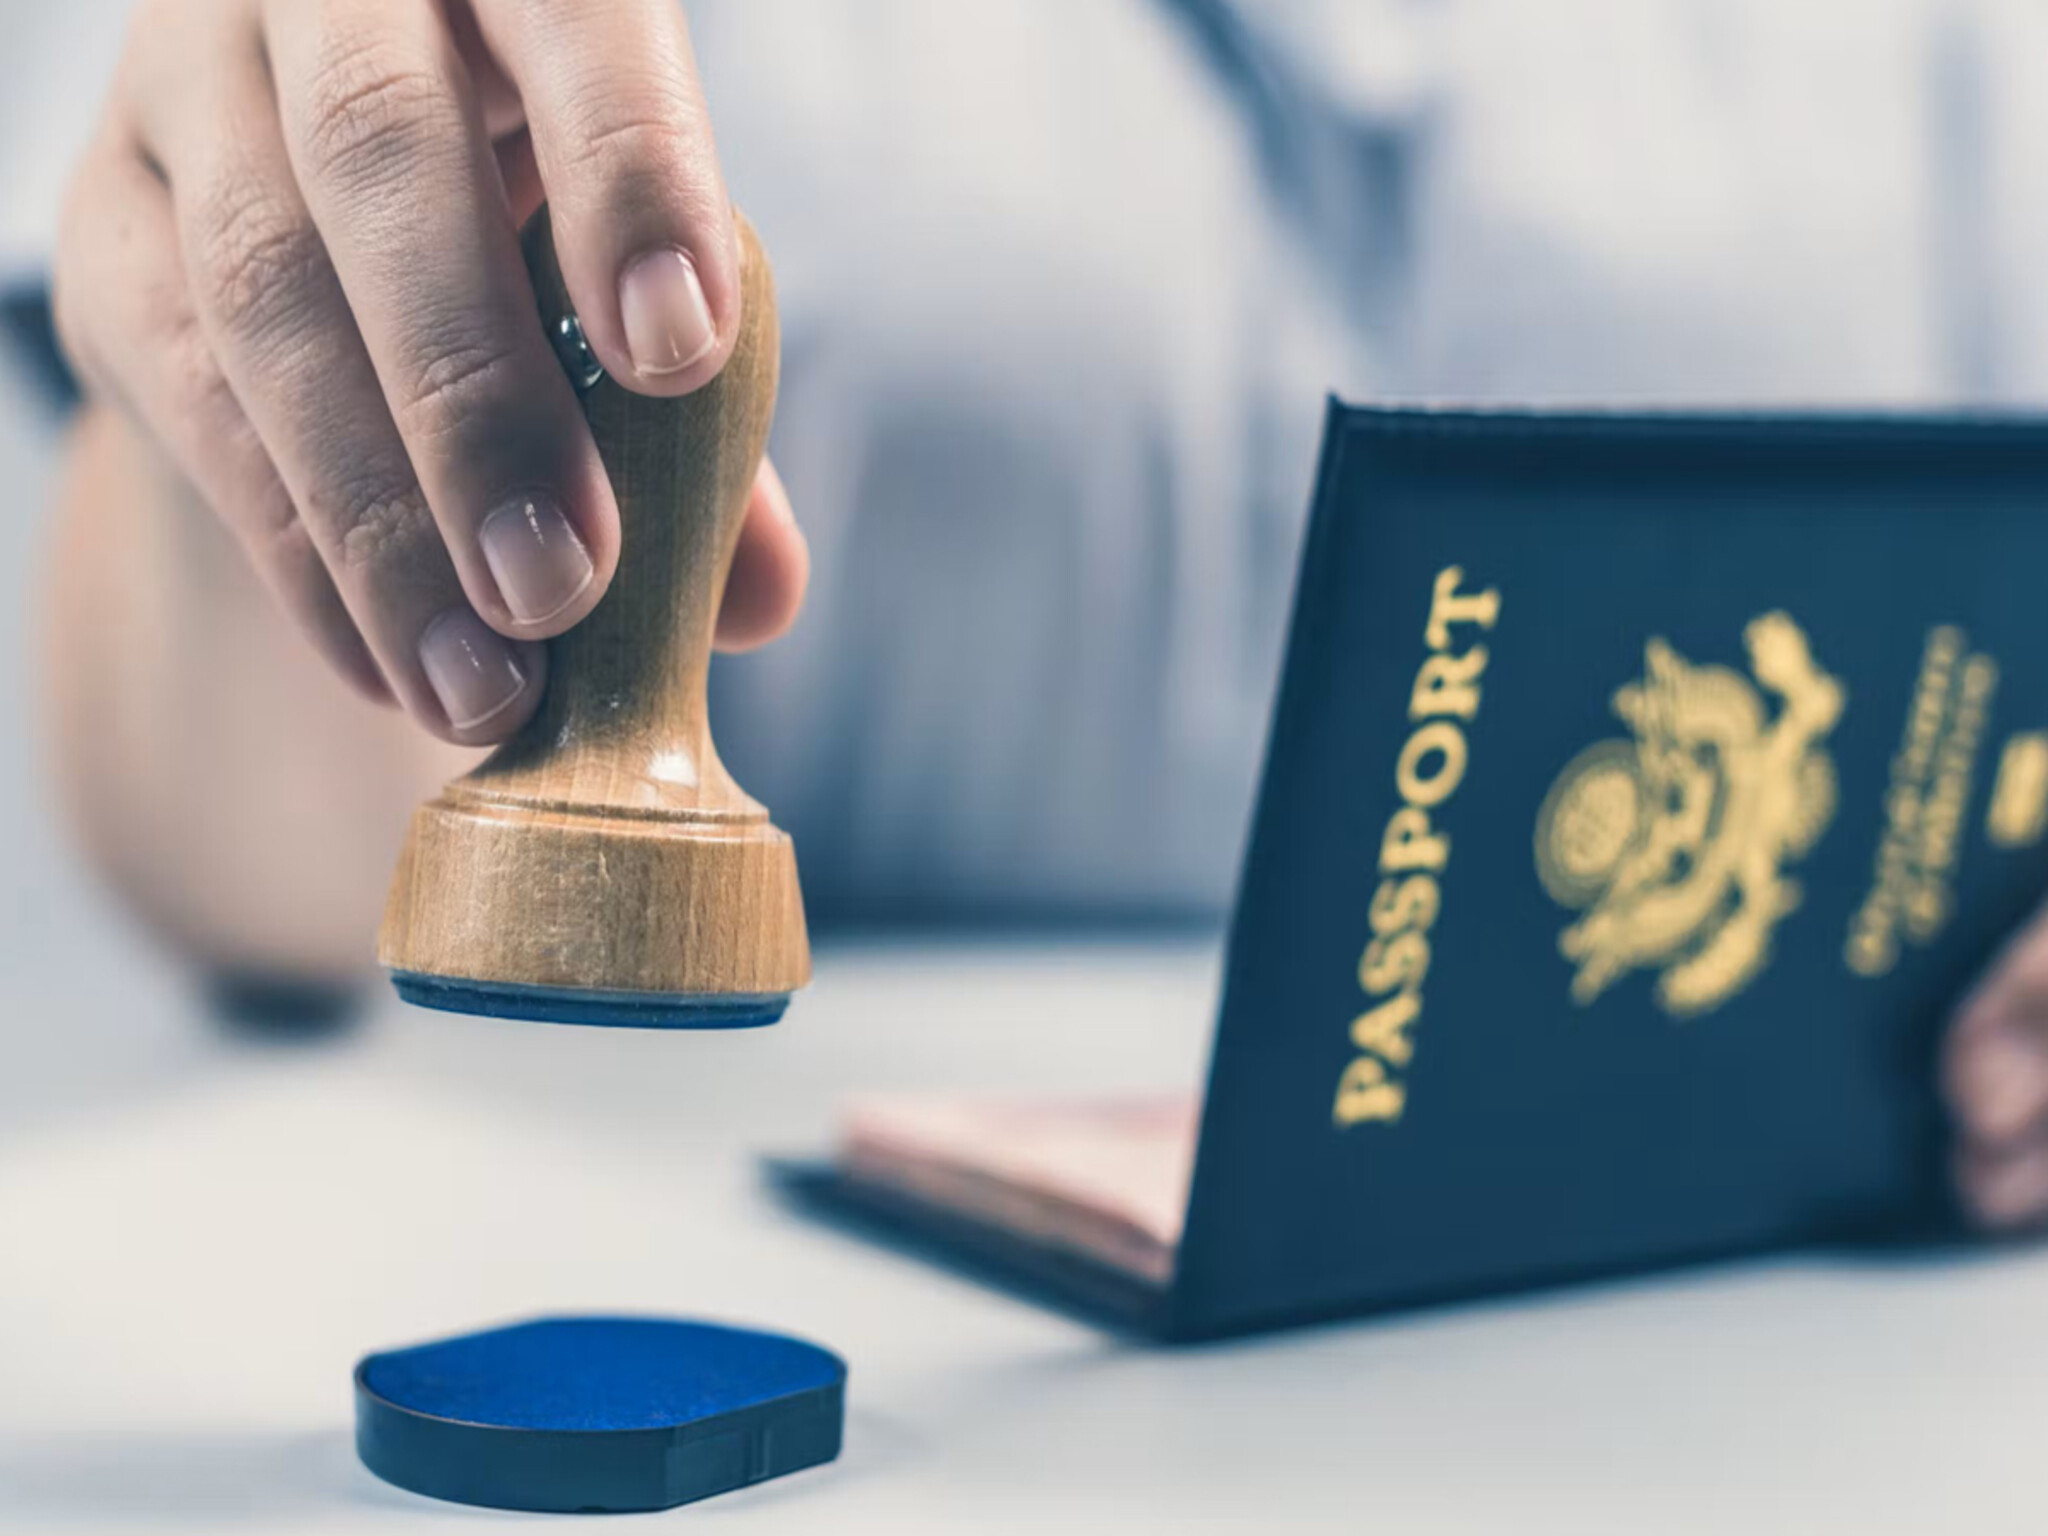 الوظائف المؤهلة للحصول على التأشيرة الزرقاء في الإمارات لمدة 10 سنوات